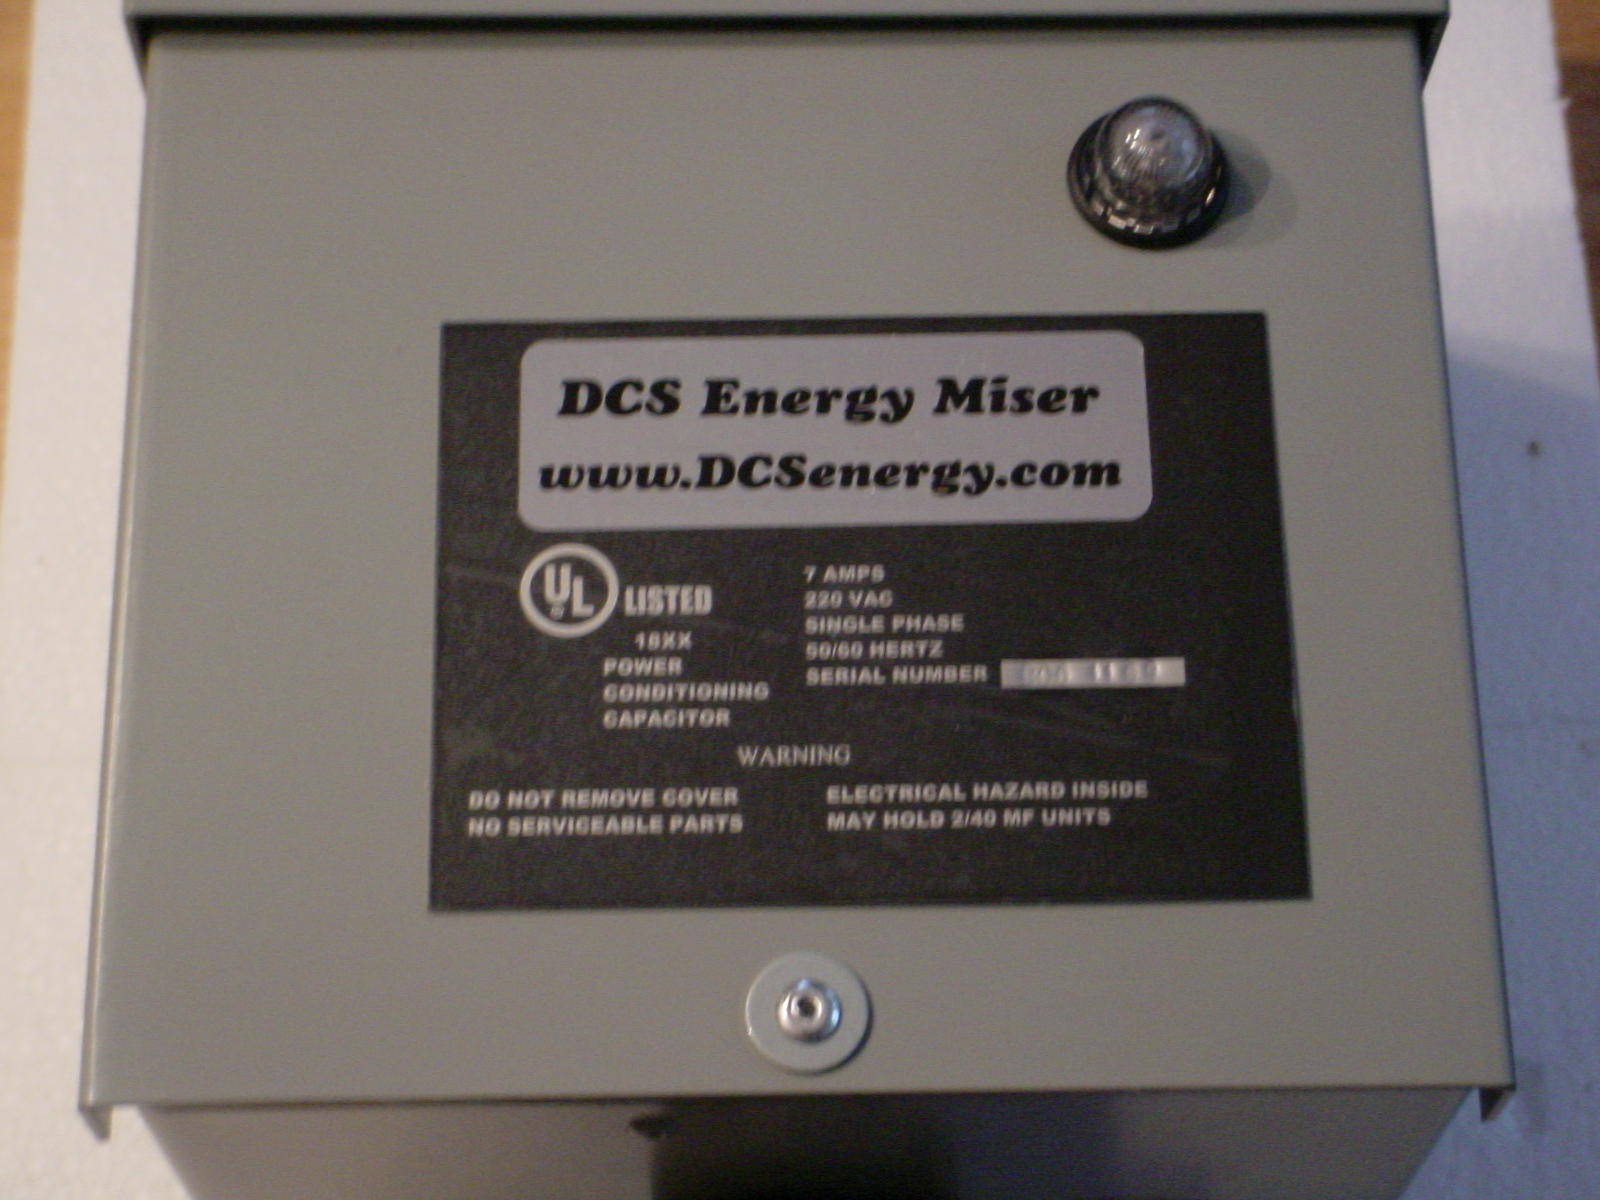 DCS Energy Miser Residential & Single Phase Unit